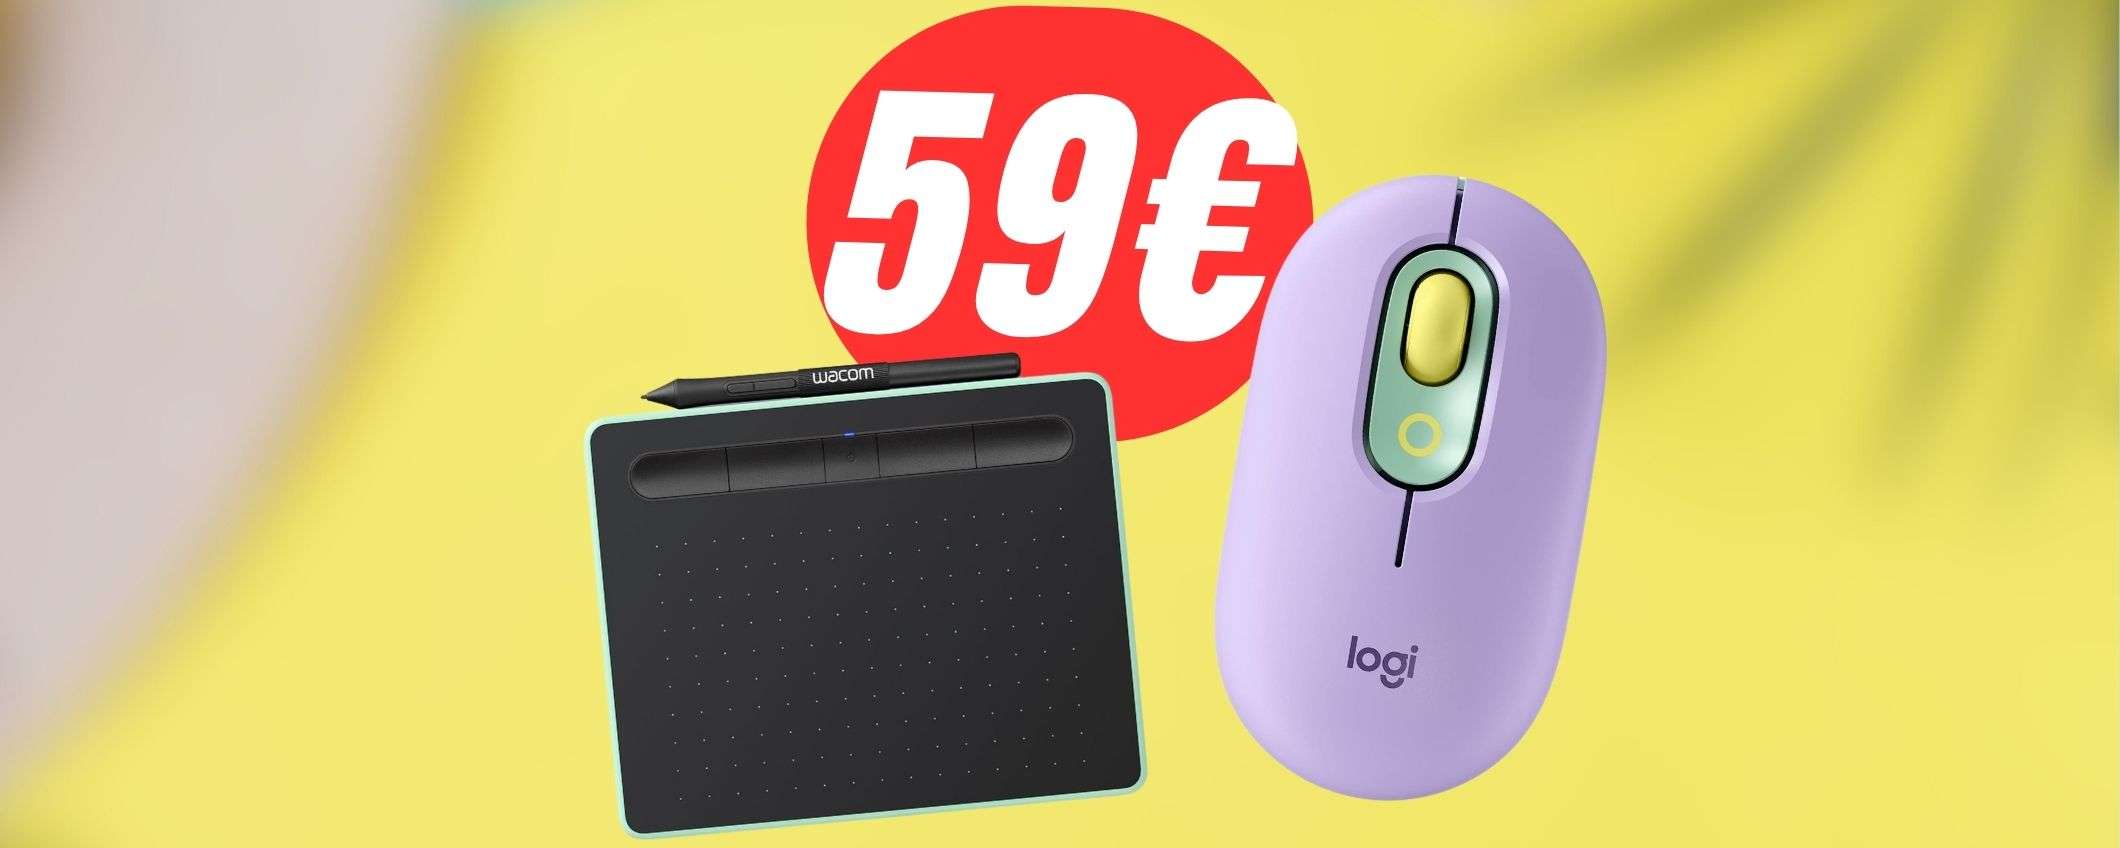 Mouse Logitech+TAVOLETTA GRAFICA Wacom: la combo perfetta crolla a 59€!